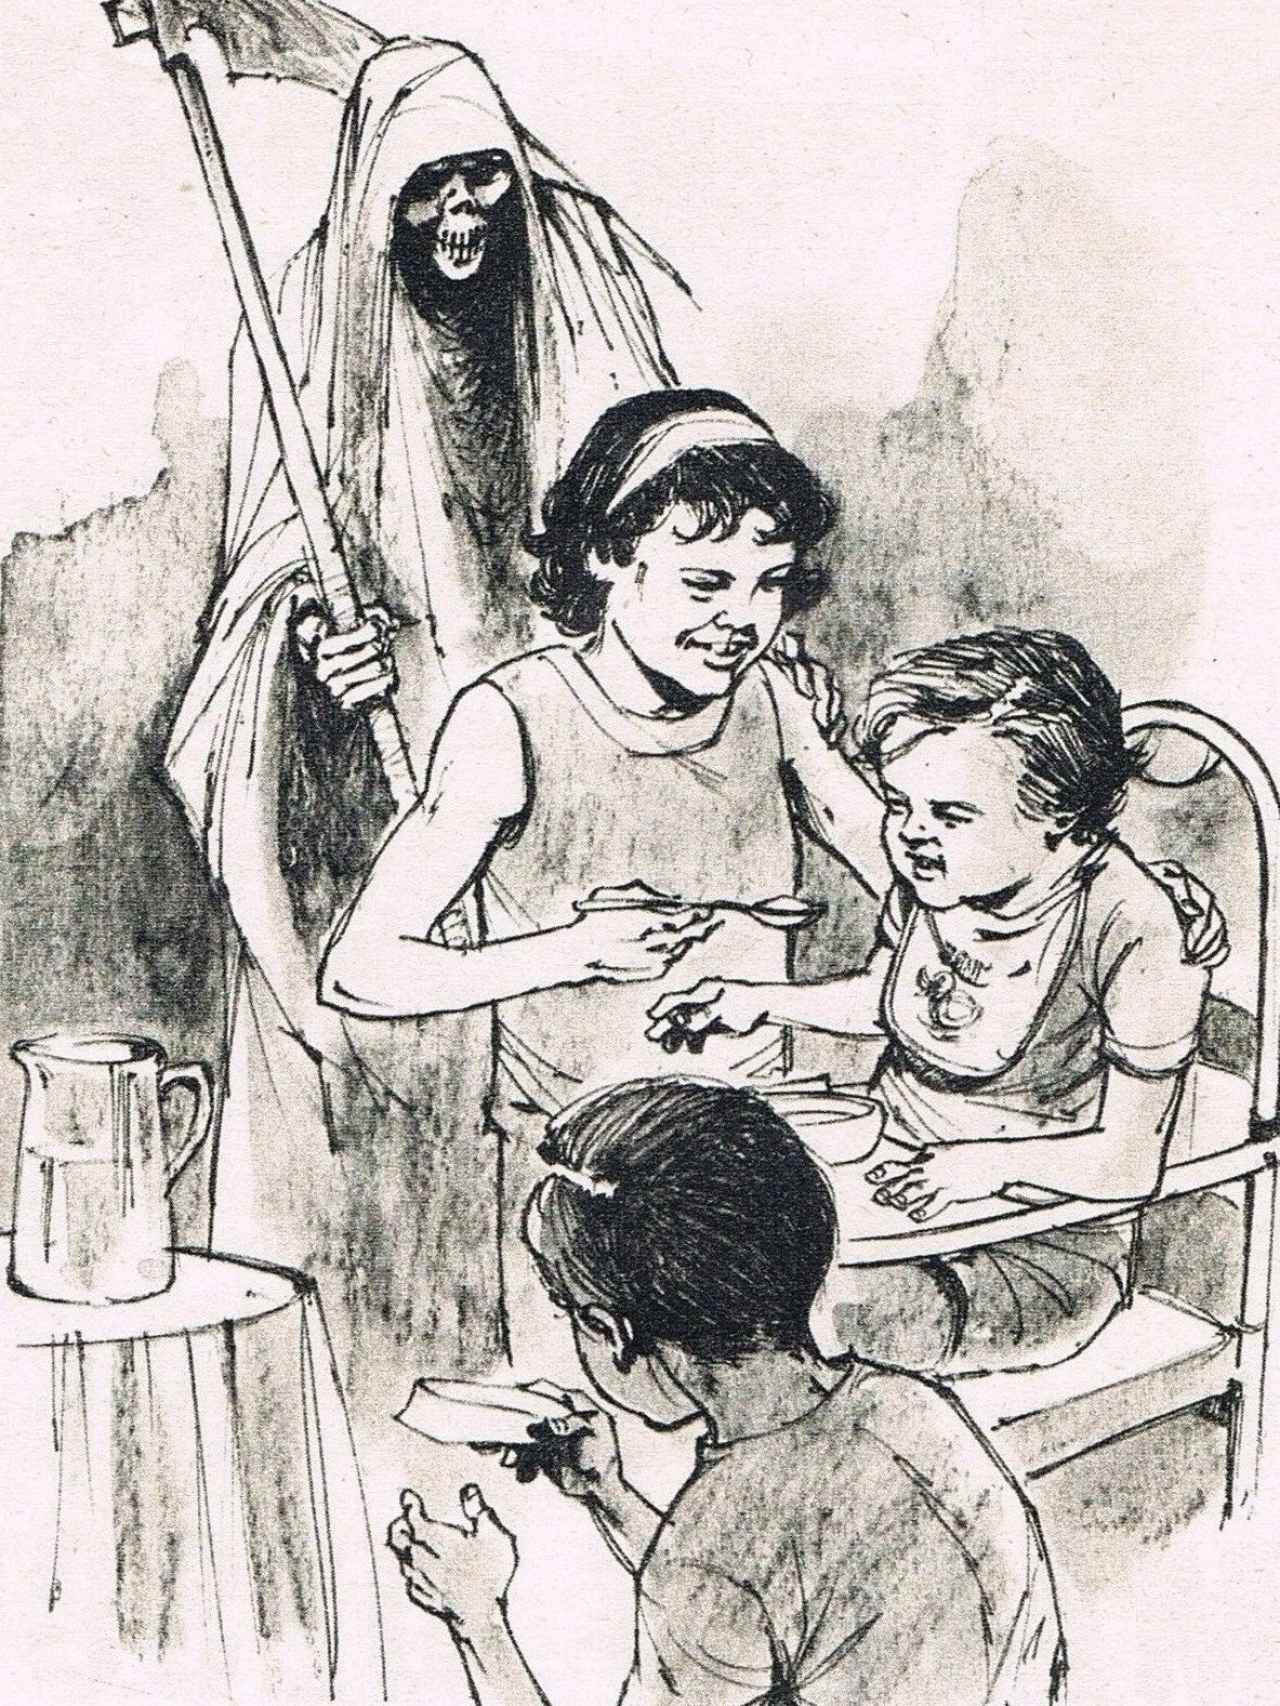 Dibujo que publicó El Caso mostrando cómo Piedad envenenaba a sus hermanitos.